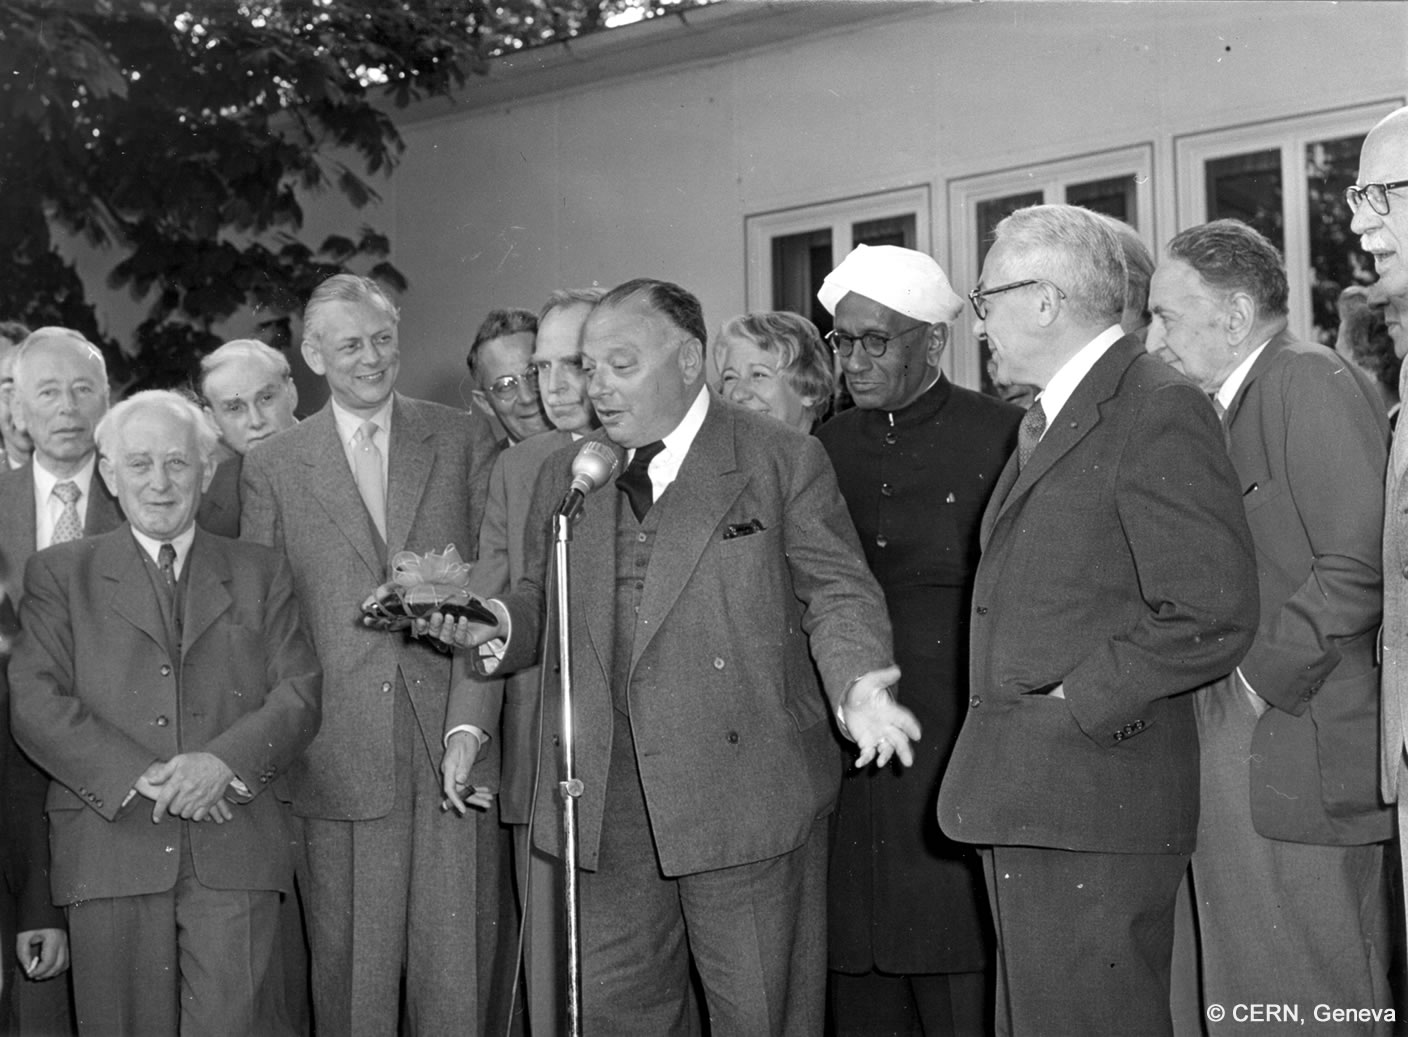 Wolfgang Pauli steht sprechend vor einem Mikrofon, hinter ihm stehen Männer